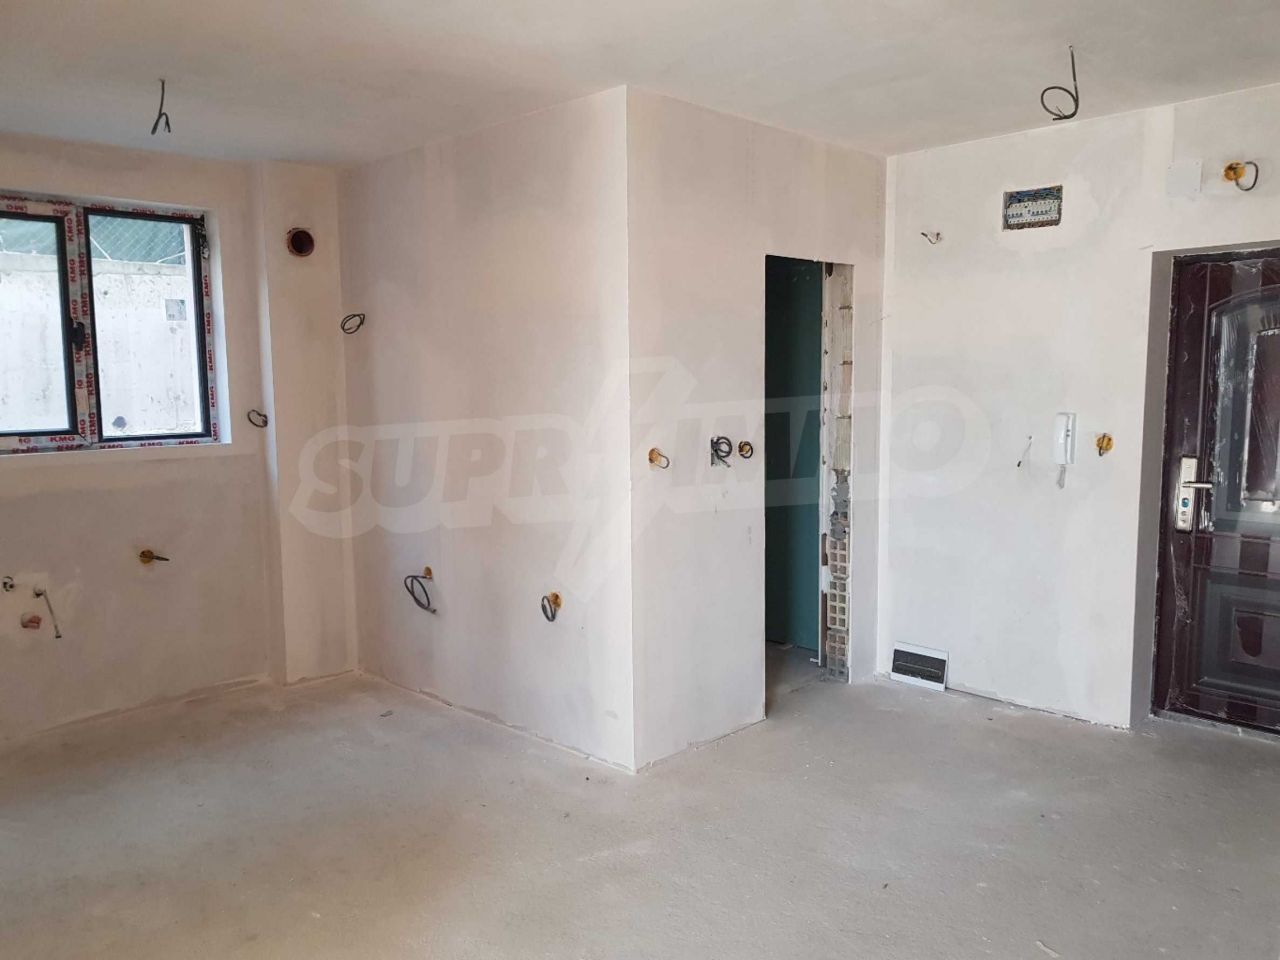 Apartment in Balchik, Bulgaria, 58 sq.m - picture 1